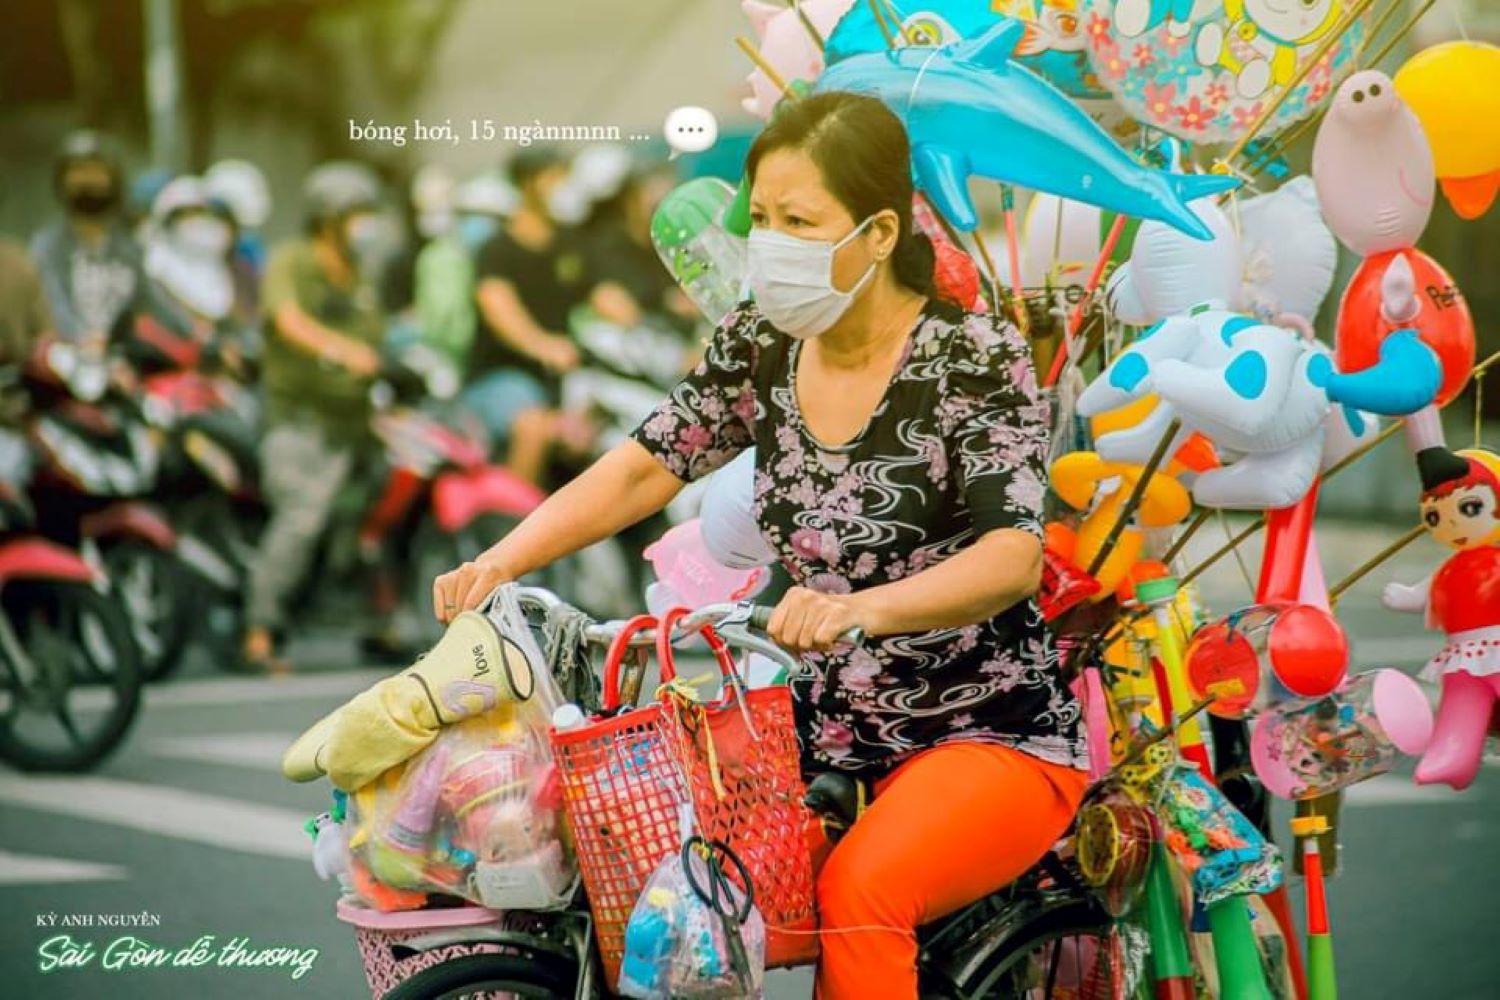 Ảnh Sài Gòn đẹp  Tổng hợp những hình ảnh Sài Gòn đẹp nhất